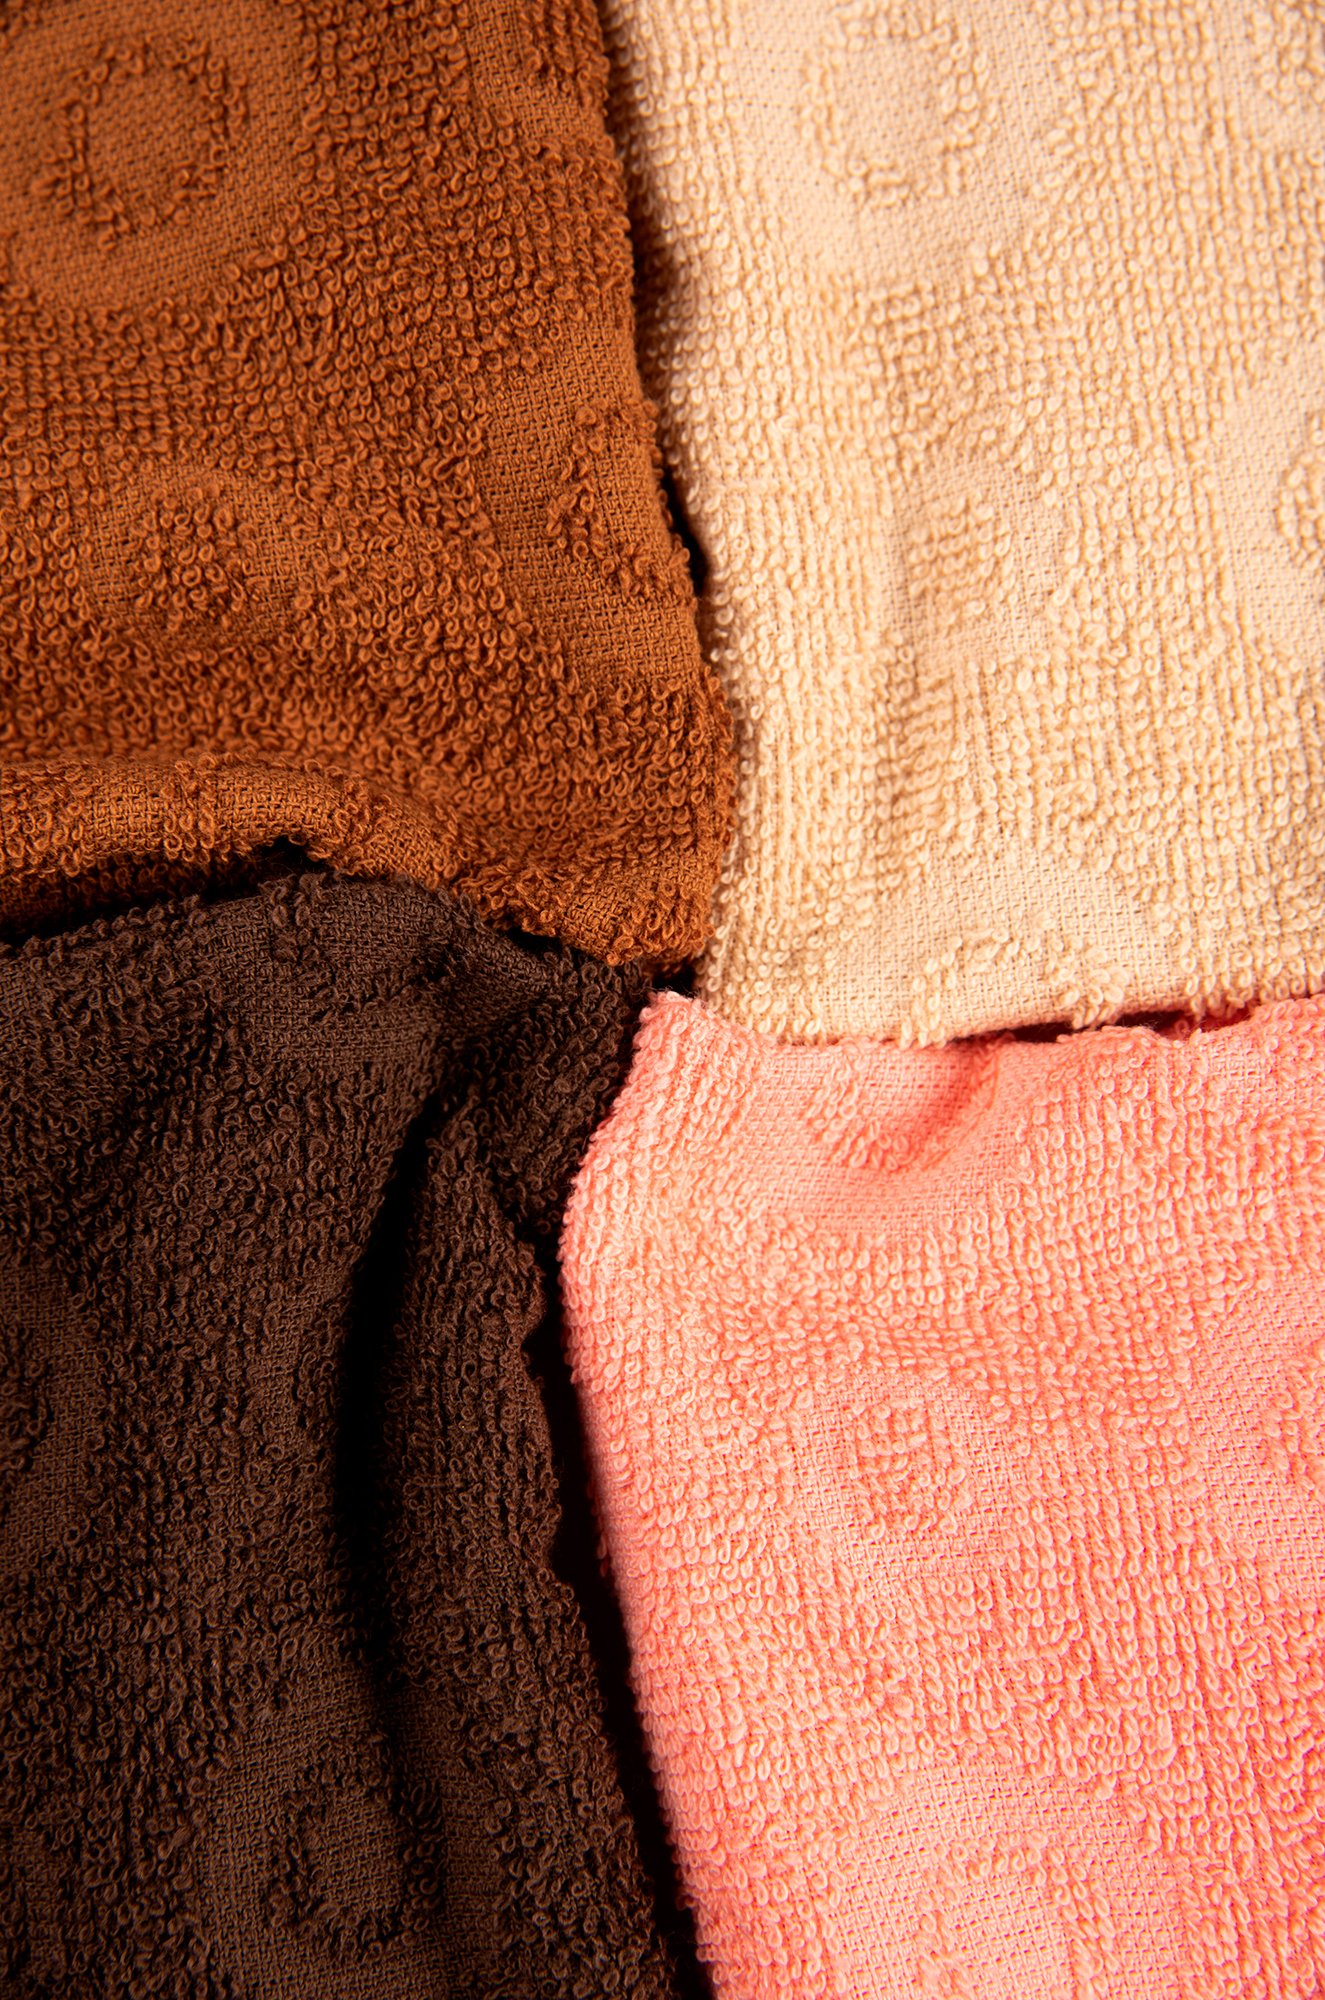 Набор махровых полотенец 4 шт. Вышневолоцкий текстиль